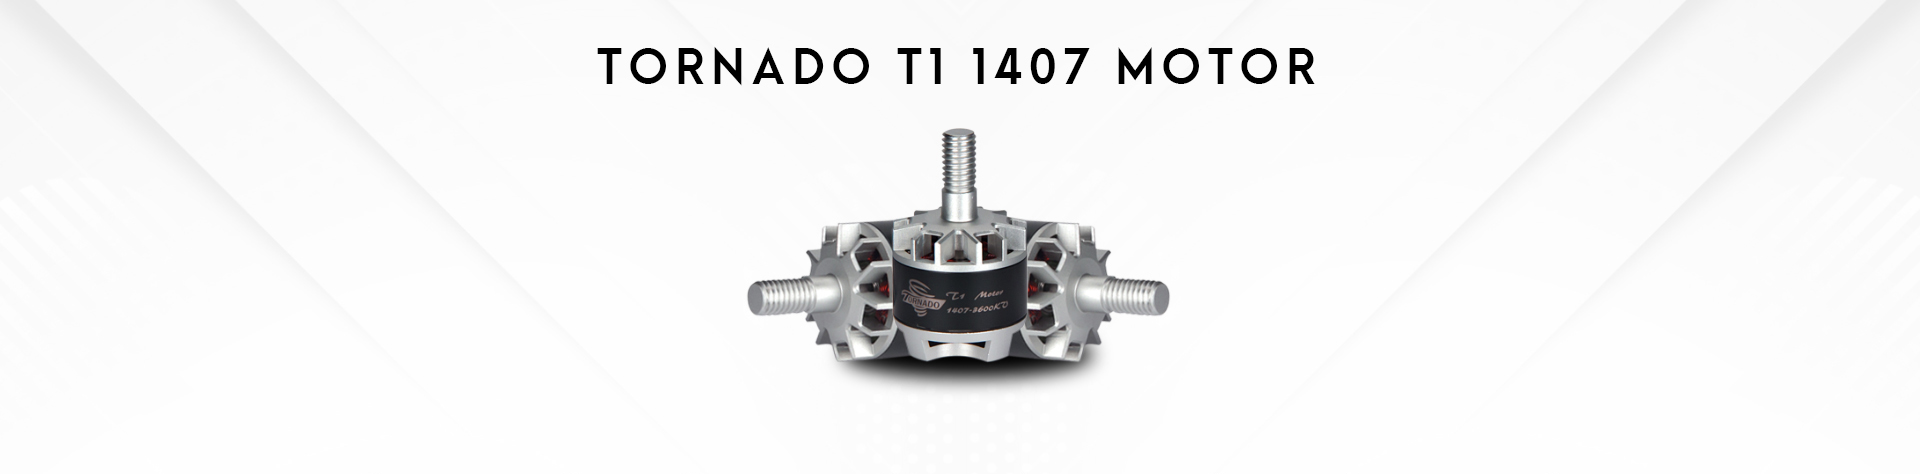 Tornado T1 1407 Motor